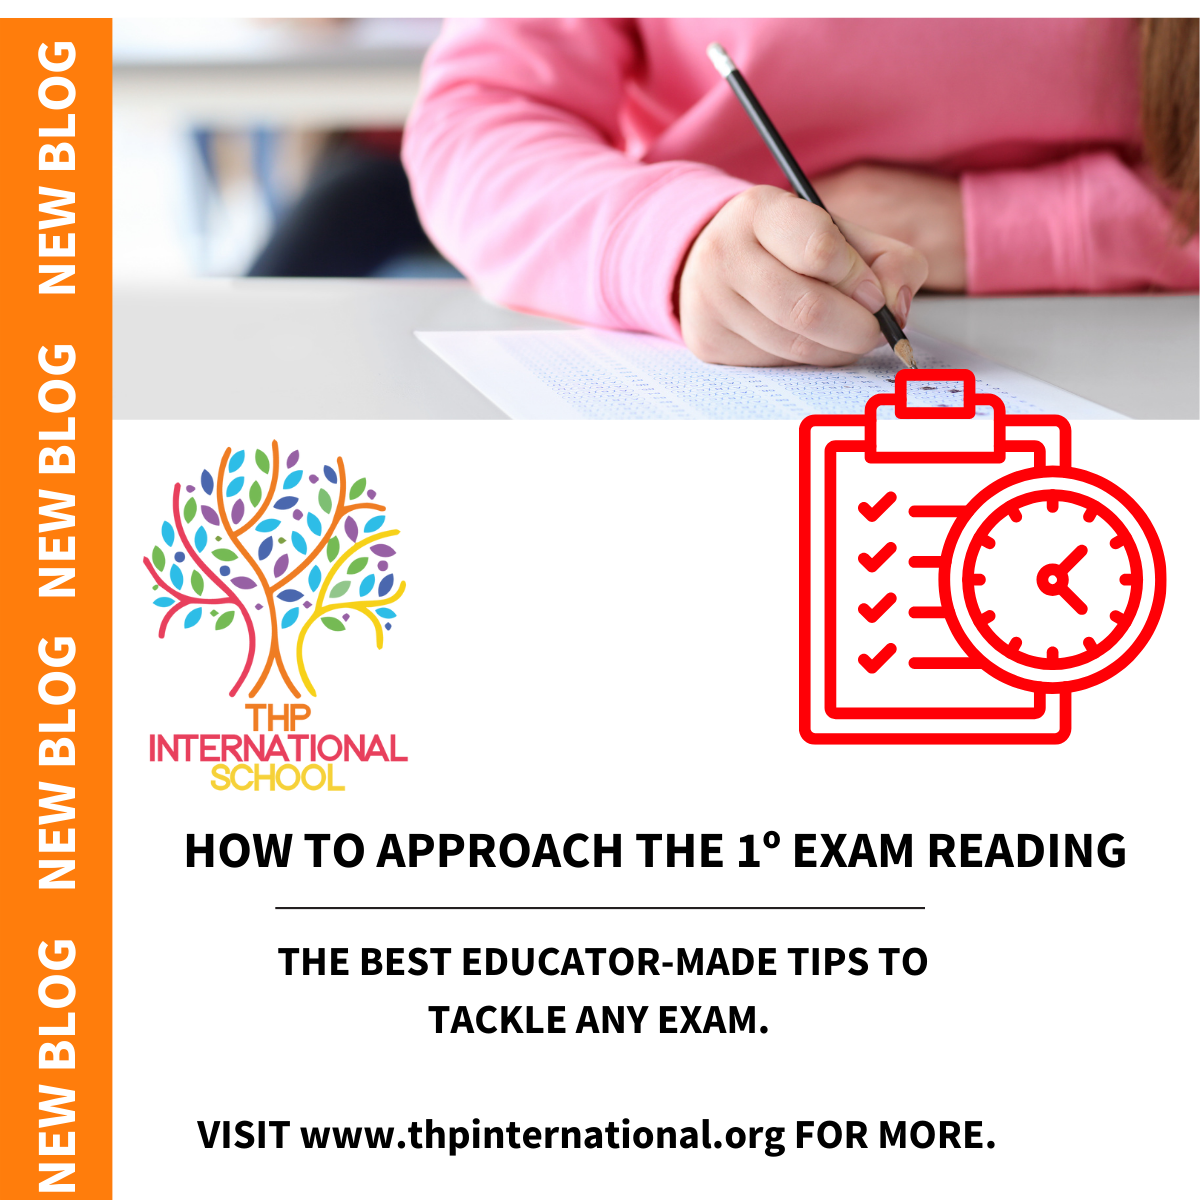 ¿Sabías que la primera lectura de un examen puede impactar profundamente tus resultados?